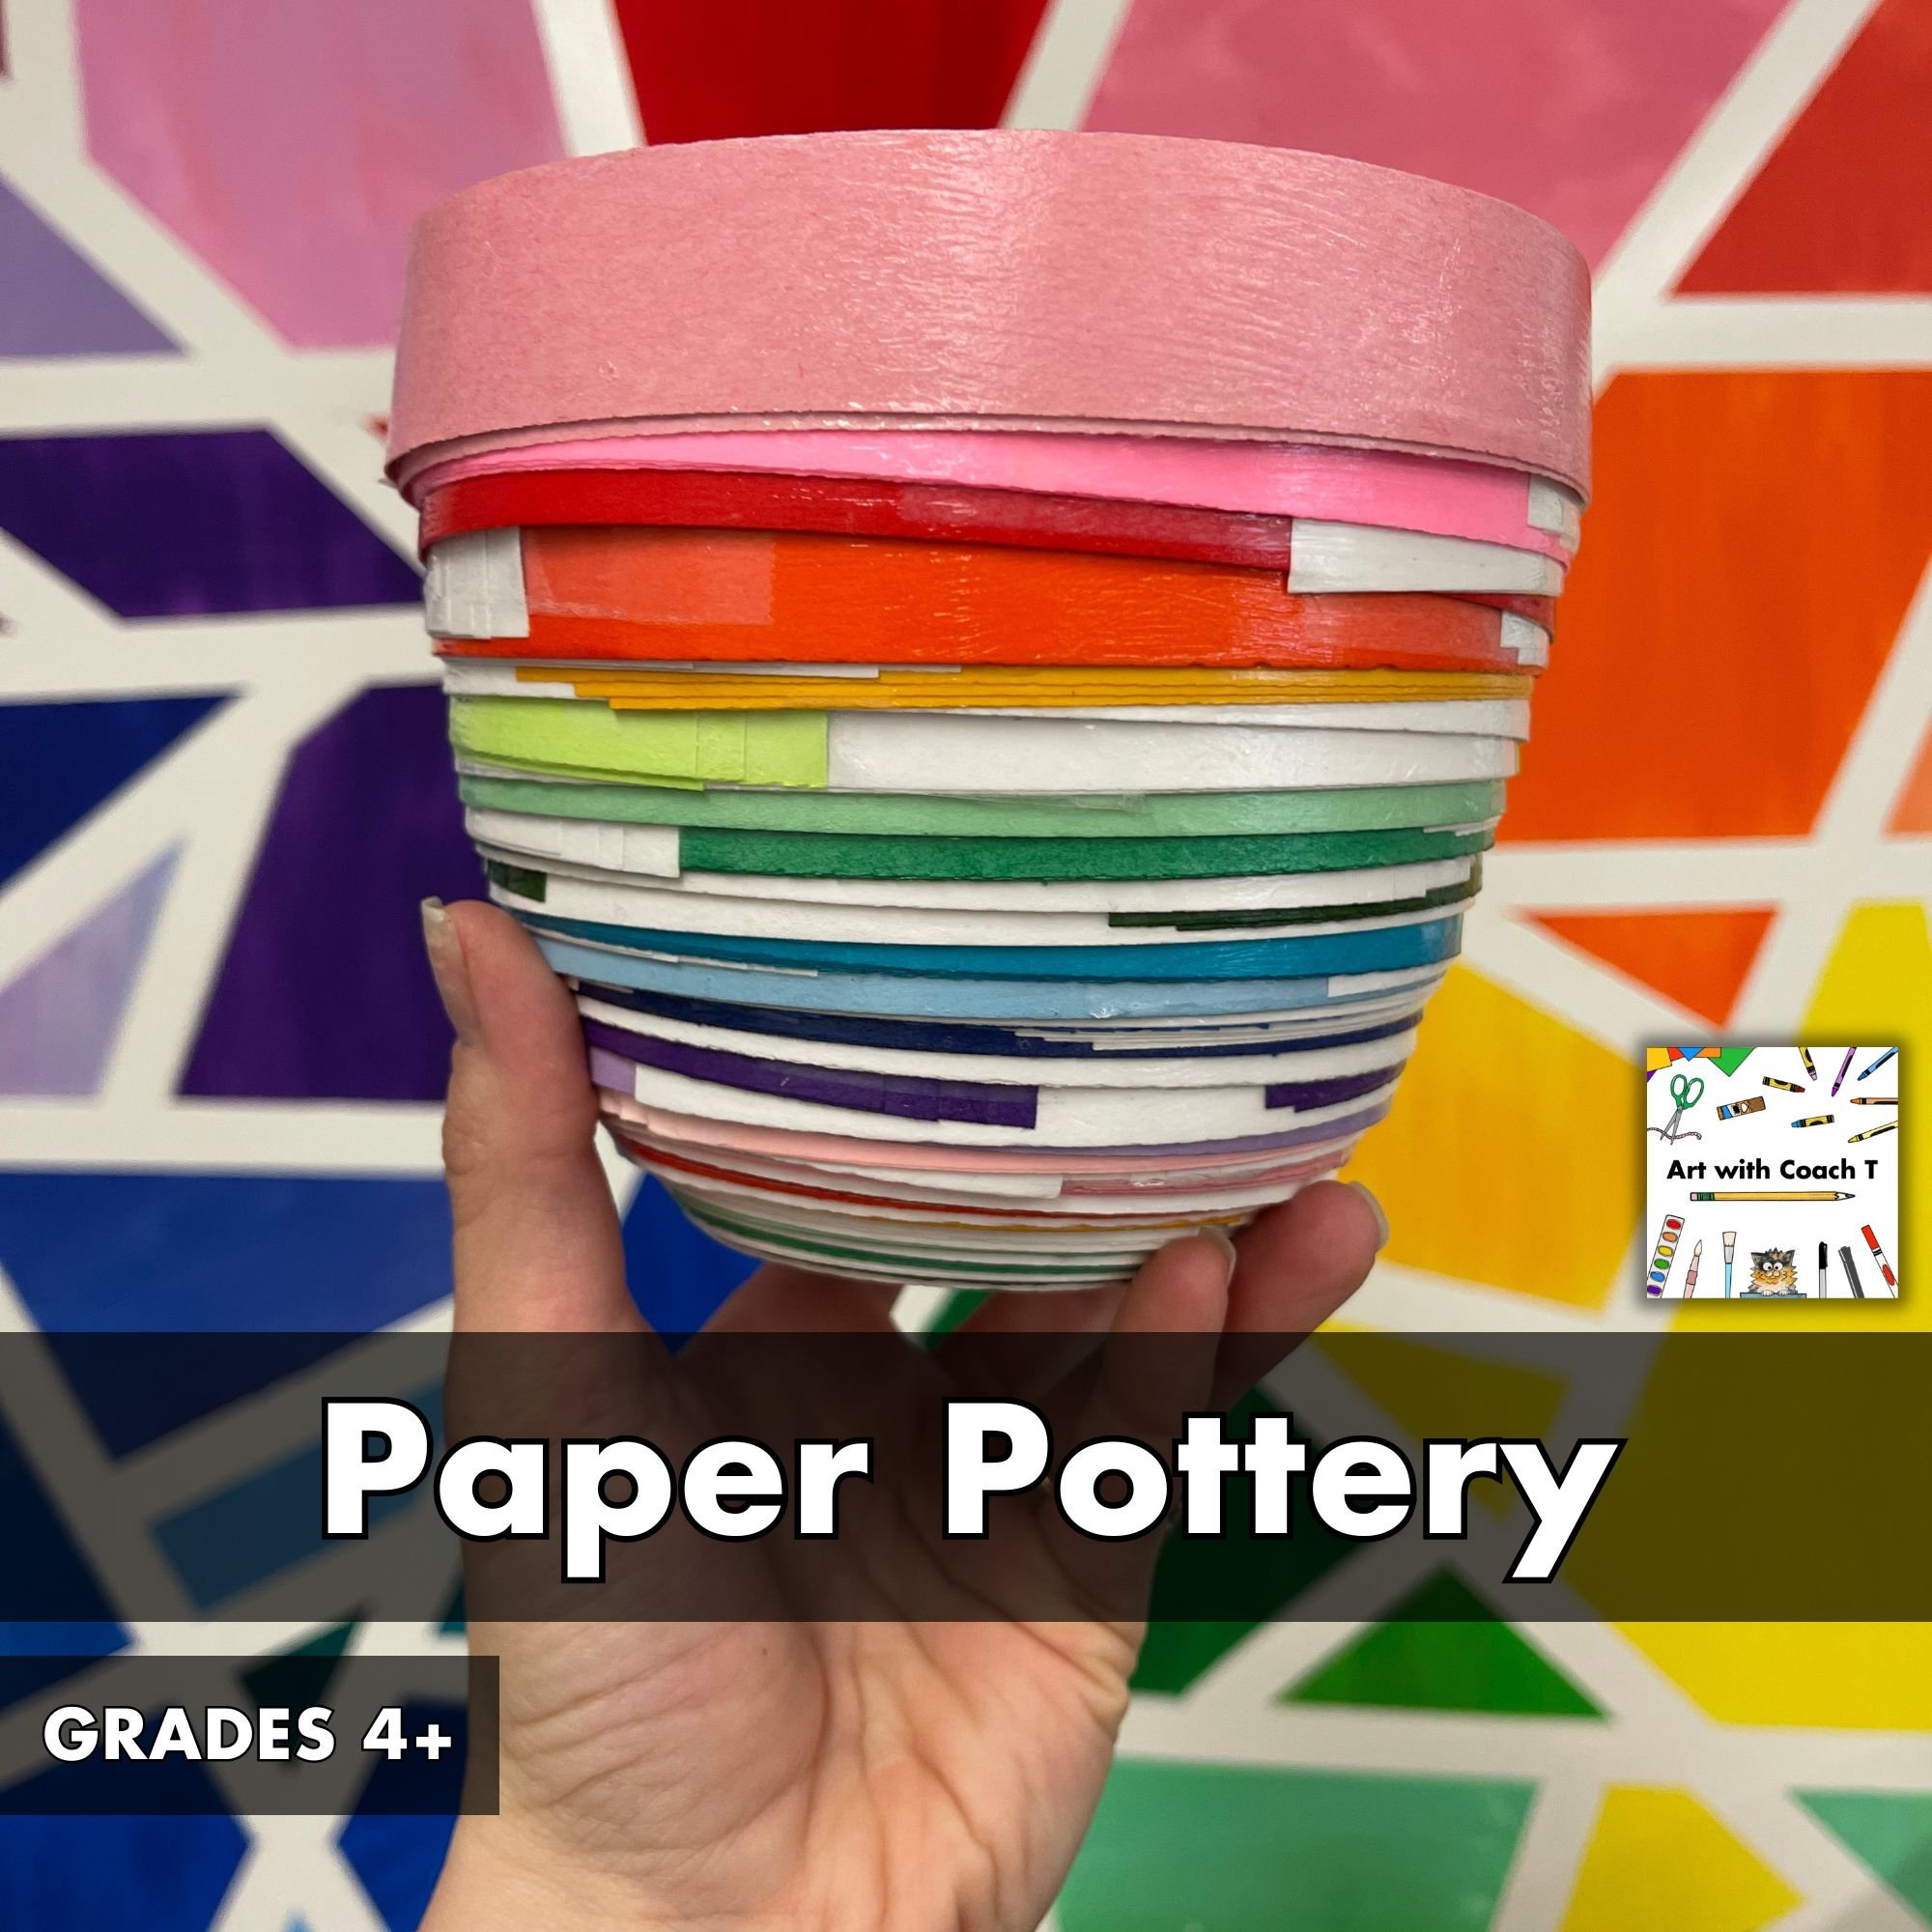 Paper Pottery TpT Cover.jpg